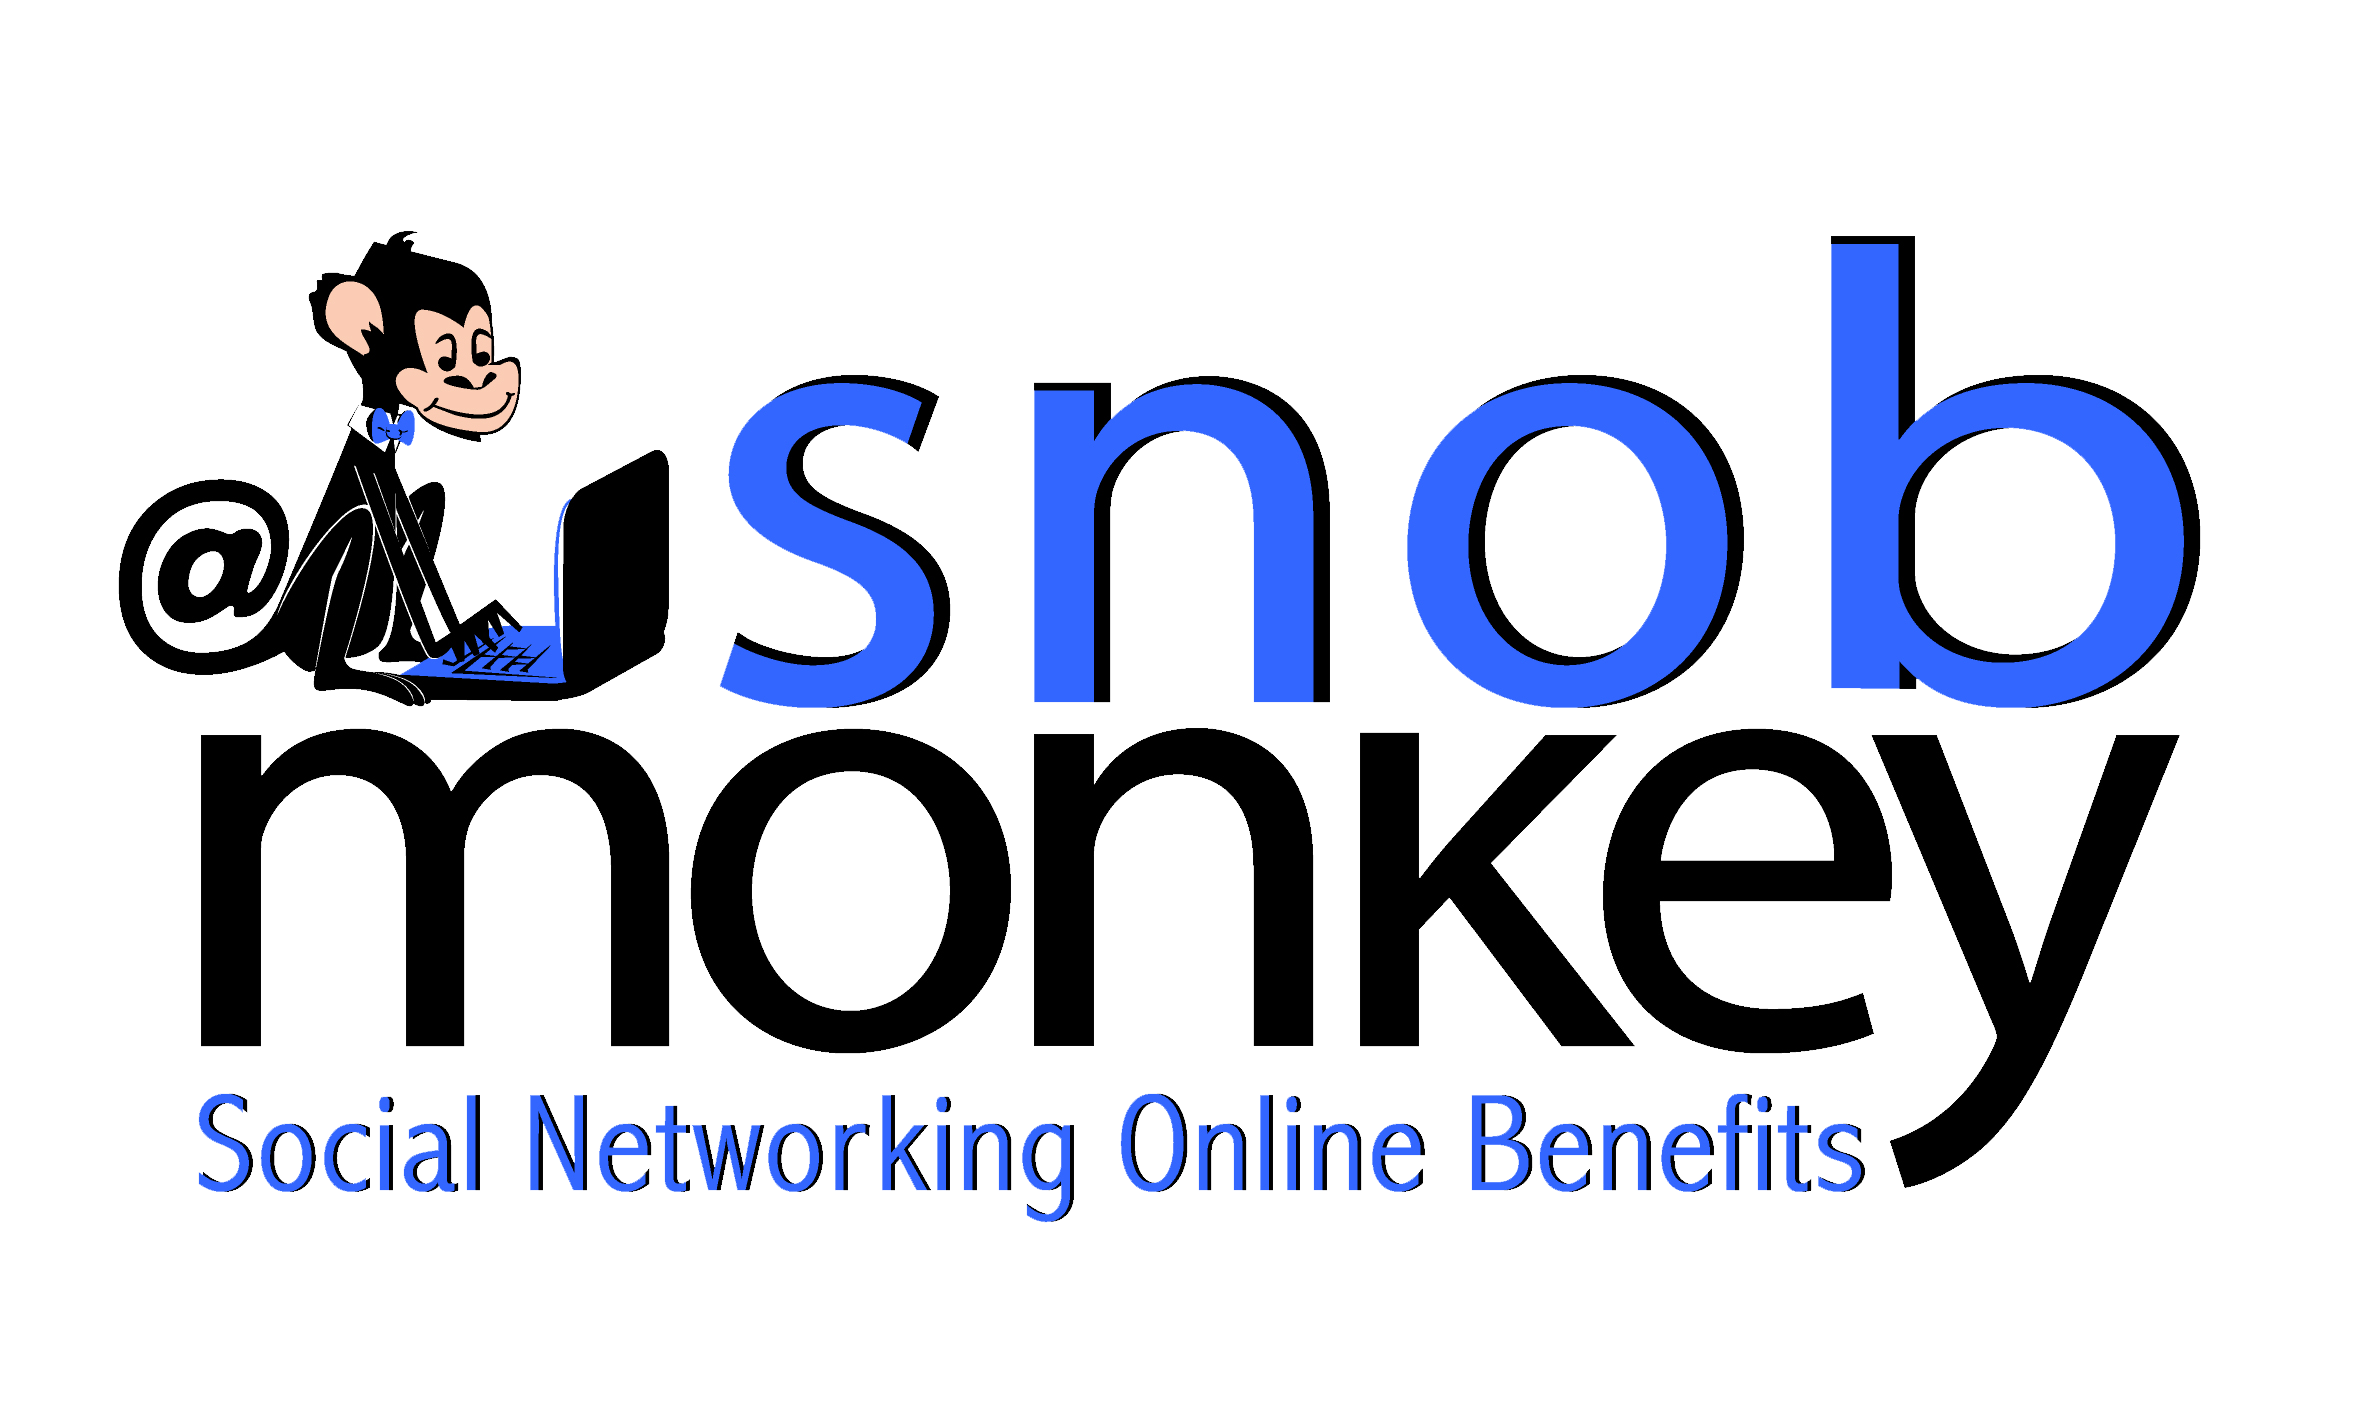 Snob Monkey Ltd